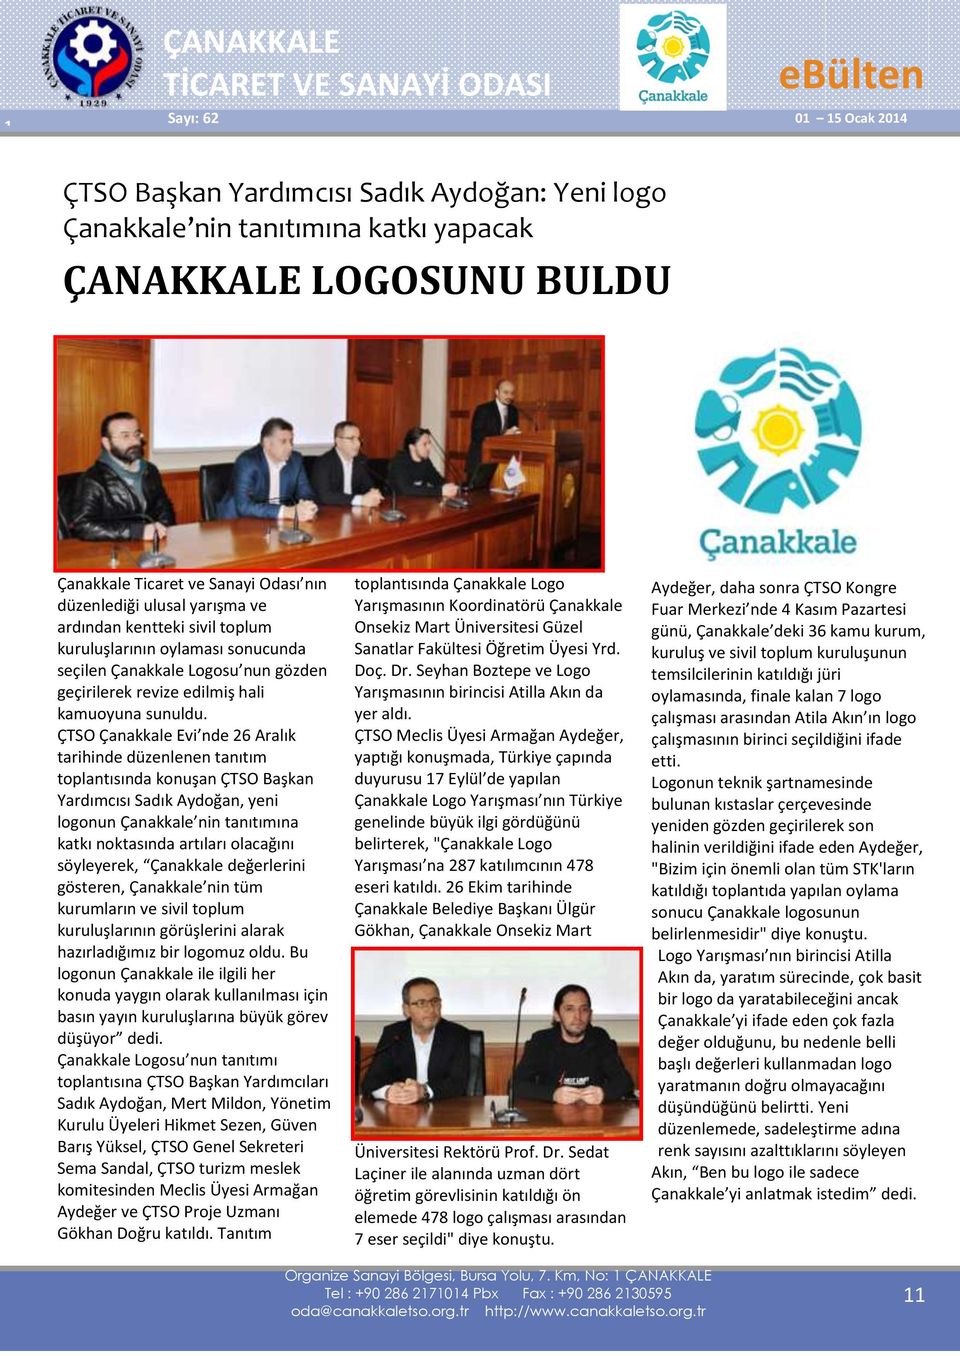 ÇTSO Çanakkale Evi nde 26 Aralık tarihinde düzenlenen tanıtım toplantısında konuşan ÇTSO Başkan Yardımcısı Sadık Aydoğan, yeni logonun Çanakkale nin tanıtımına katkı noktasında artıları olacağını